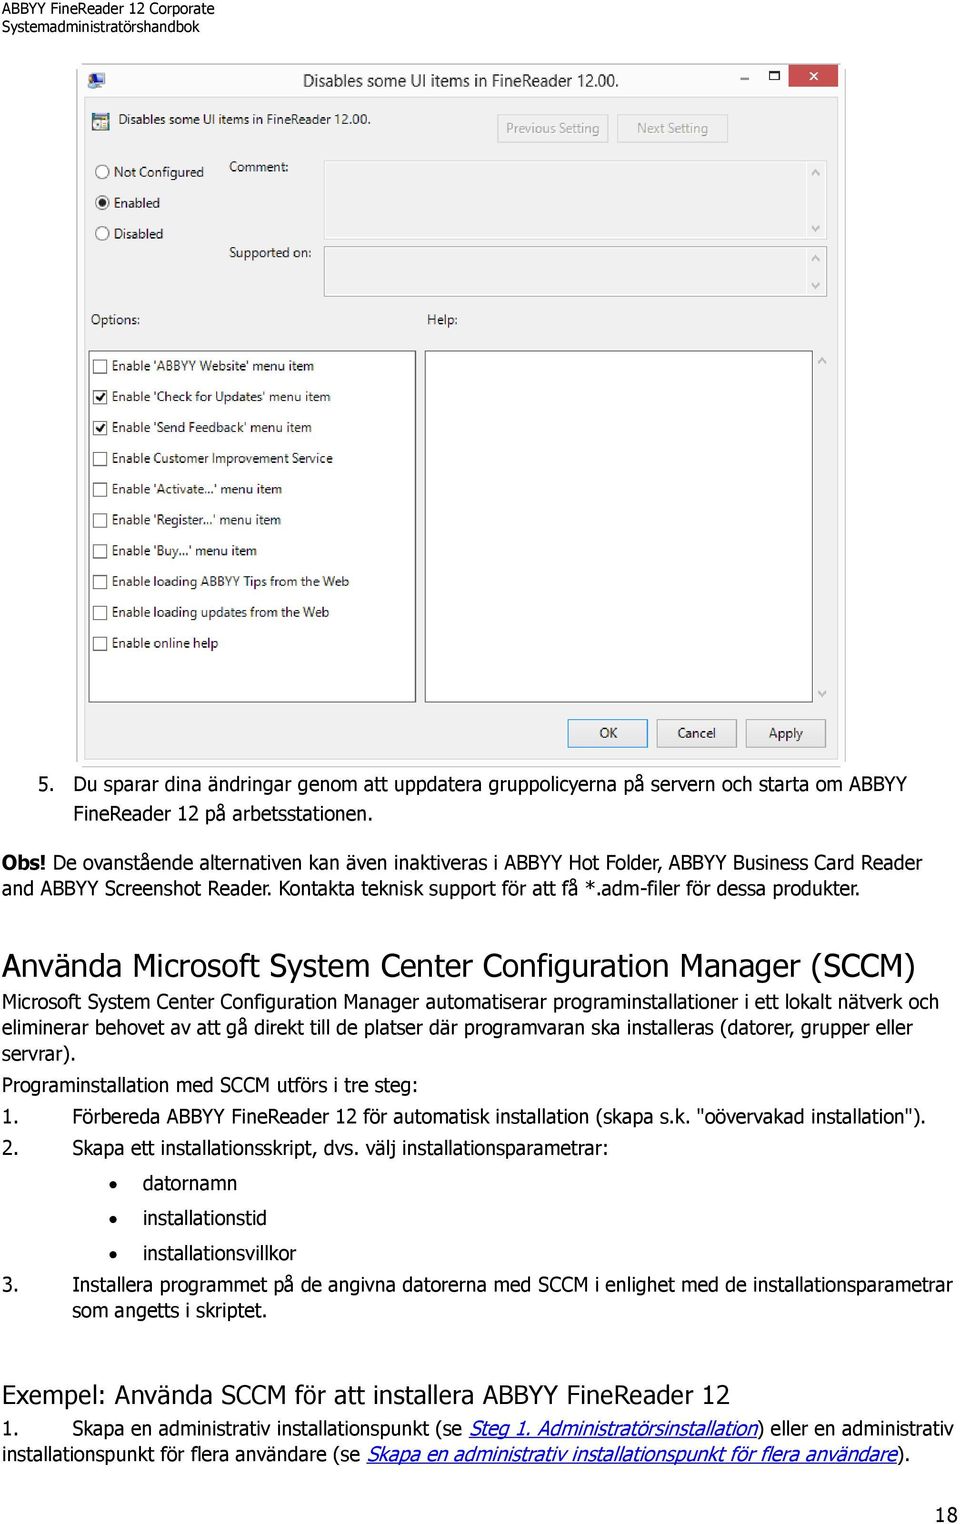 Använda Microsoft System Center Configuration Manager (SCCM) Microsoft System Center Configuration Manager automatiserar programinstallationer i ett lokalt nätverk och eliminerar behovet av att gå